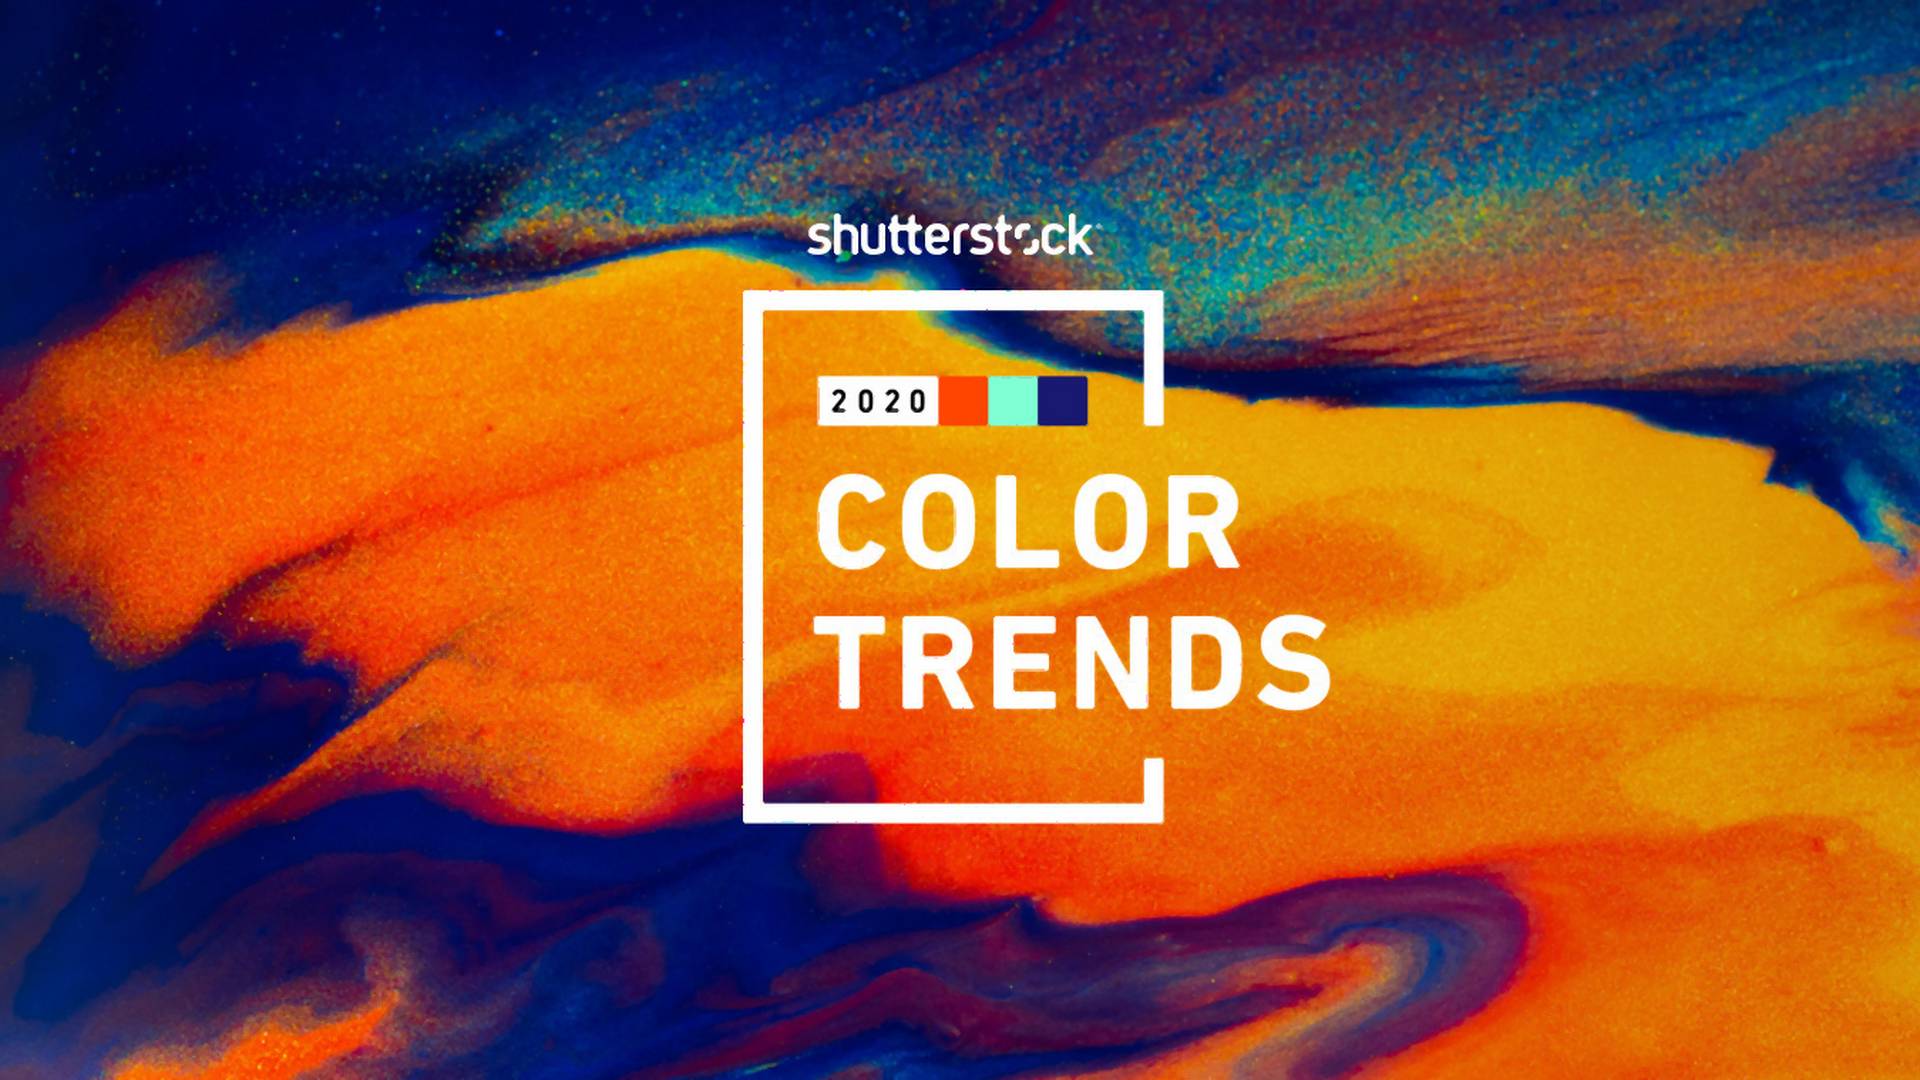 Kolor roku 2020 będzie melanżem trzech różnych odcieni według badań Shutterstocka